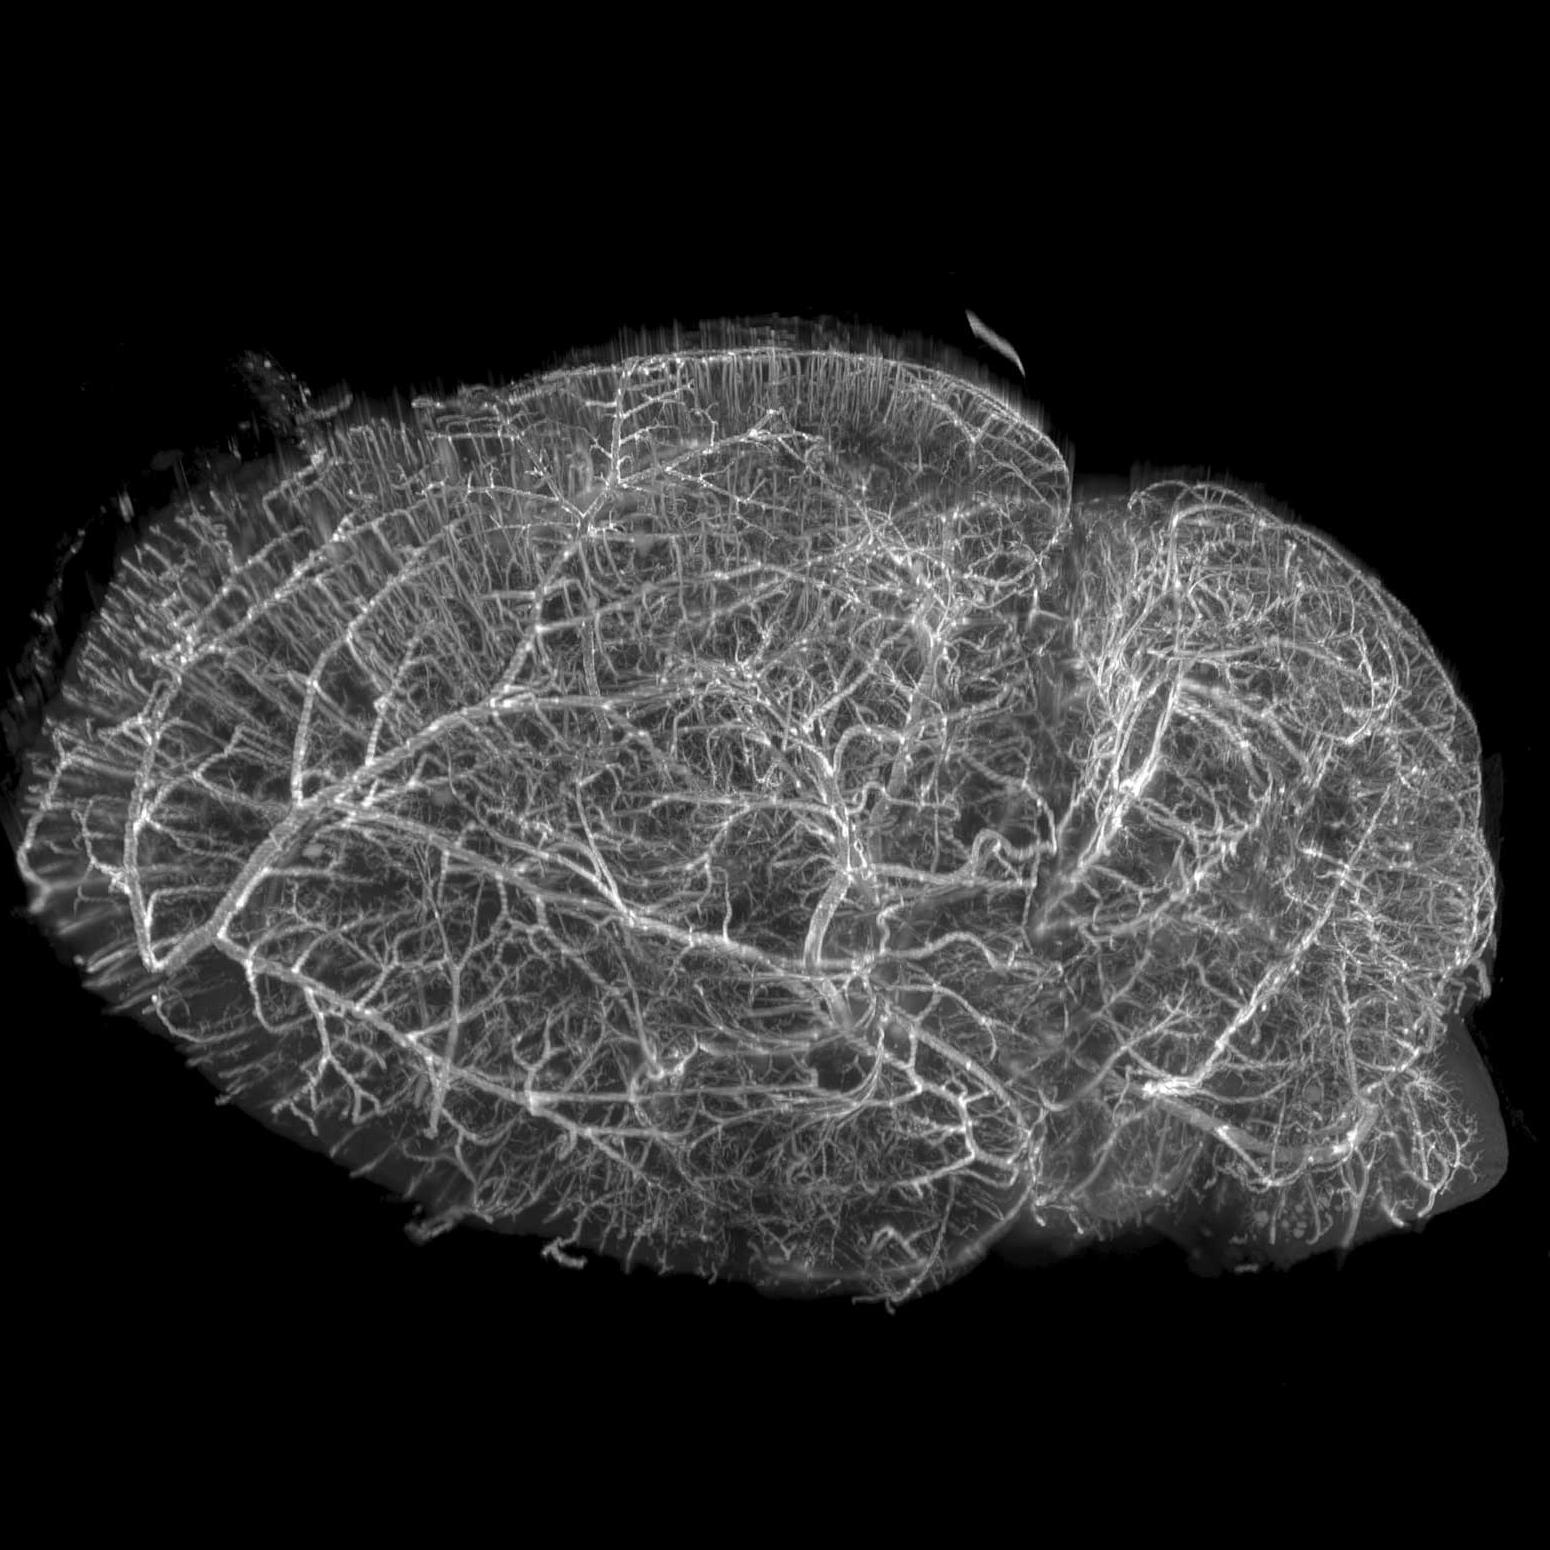 小鼠大脑，使用脂质染料染色以标记脉管系统膜，使用iDISCO+进行透明化处理，并使用激光片层扫描显微系统成像。样品由美国哈佛大学的E. Diel提供